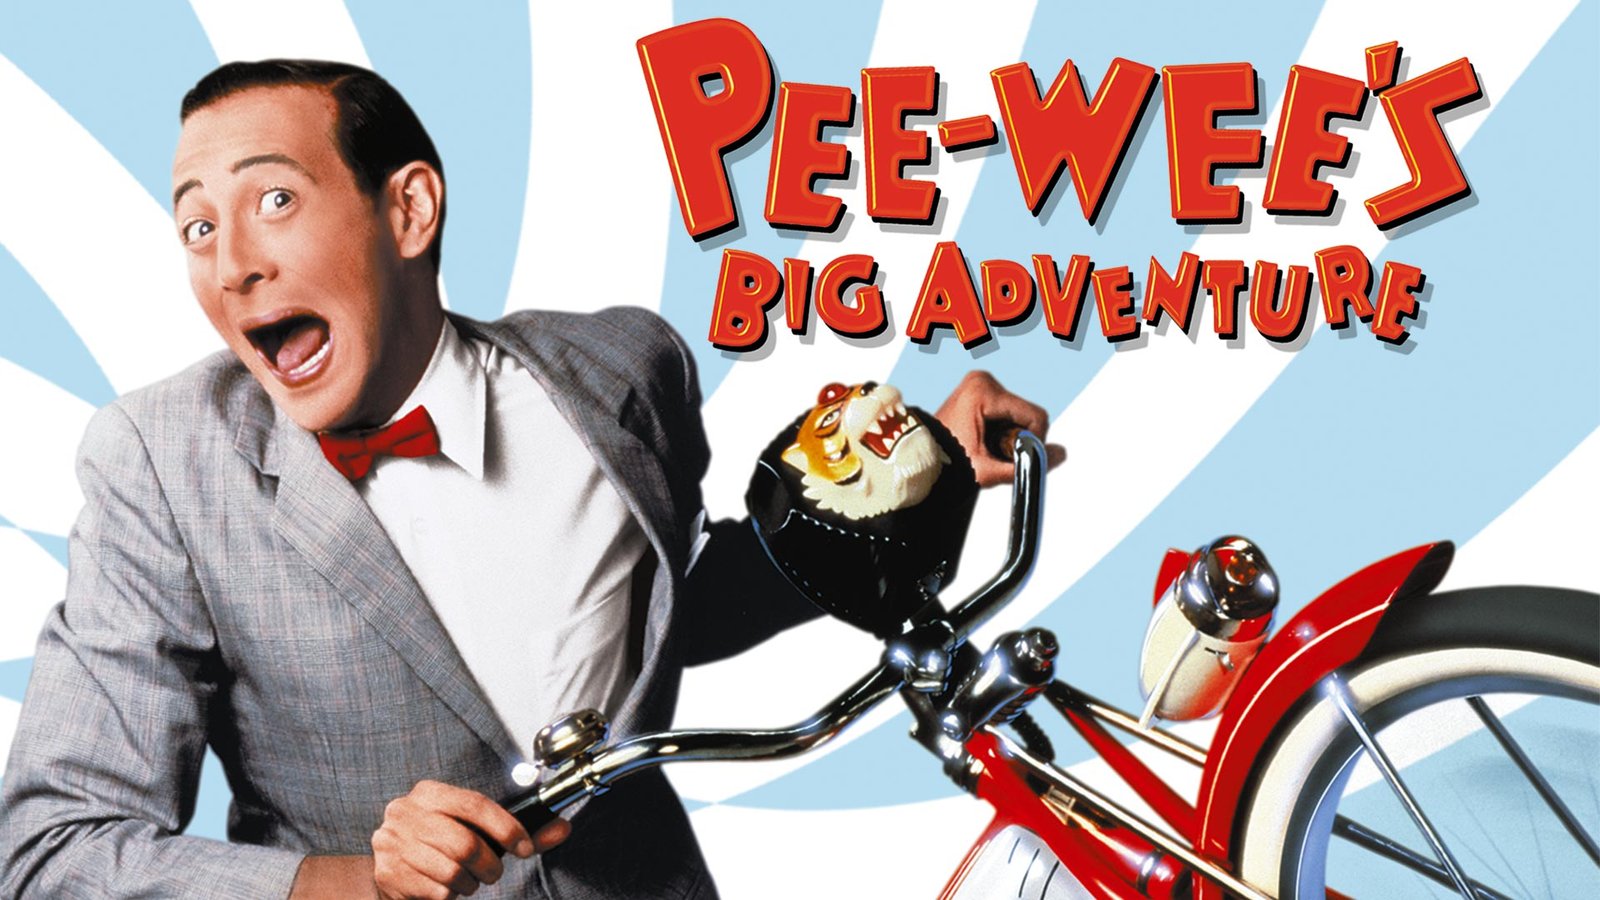 Pee-wee’s Big Adventure